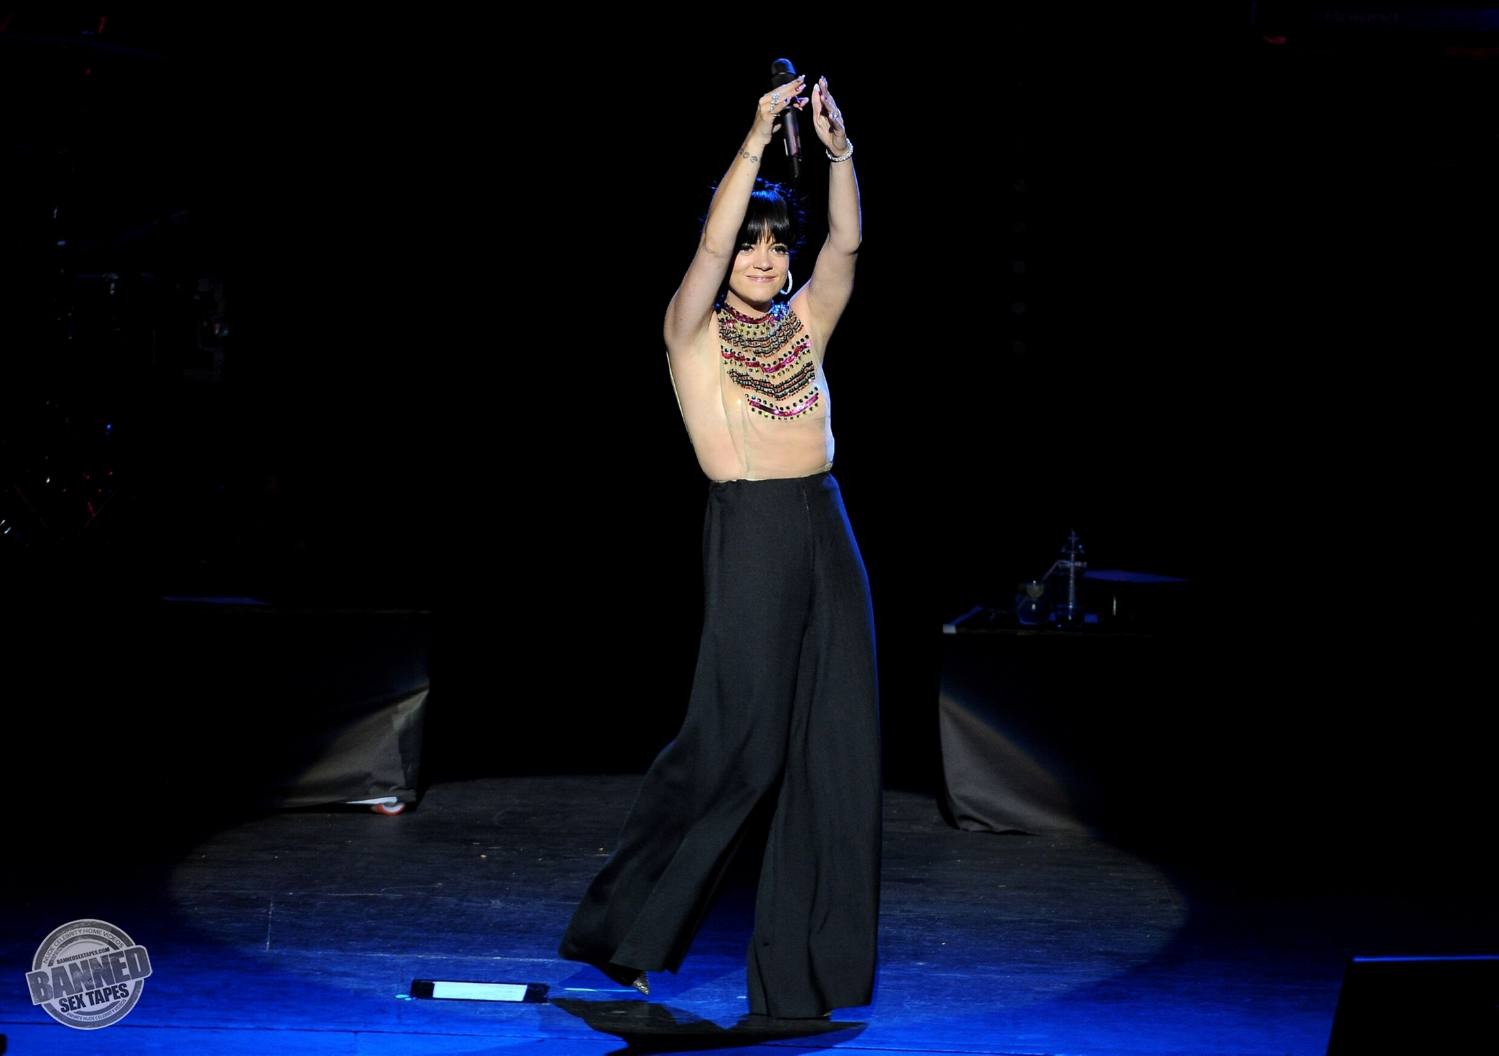 Lily Allen sieht ihre nackten Titten durch ein transparentes Top während eines Konzerts
 #75191542